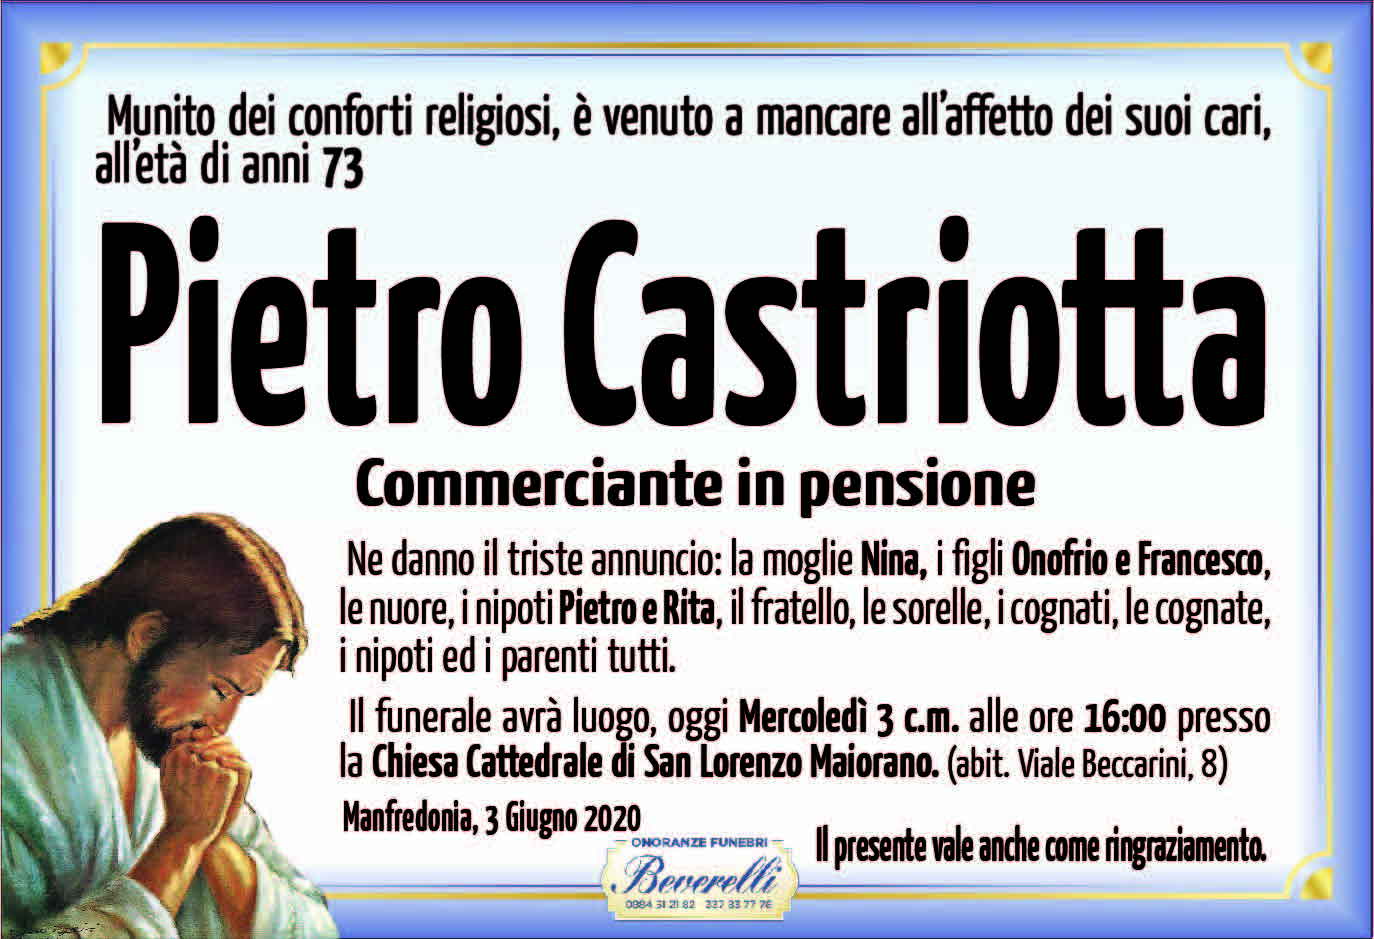 Pietro Castriotta